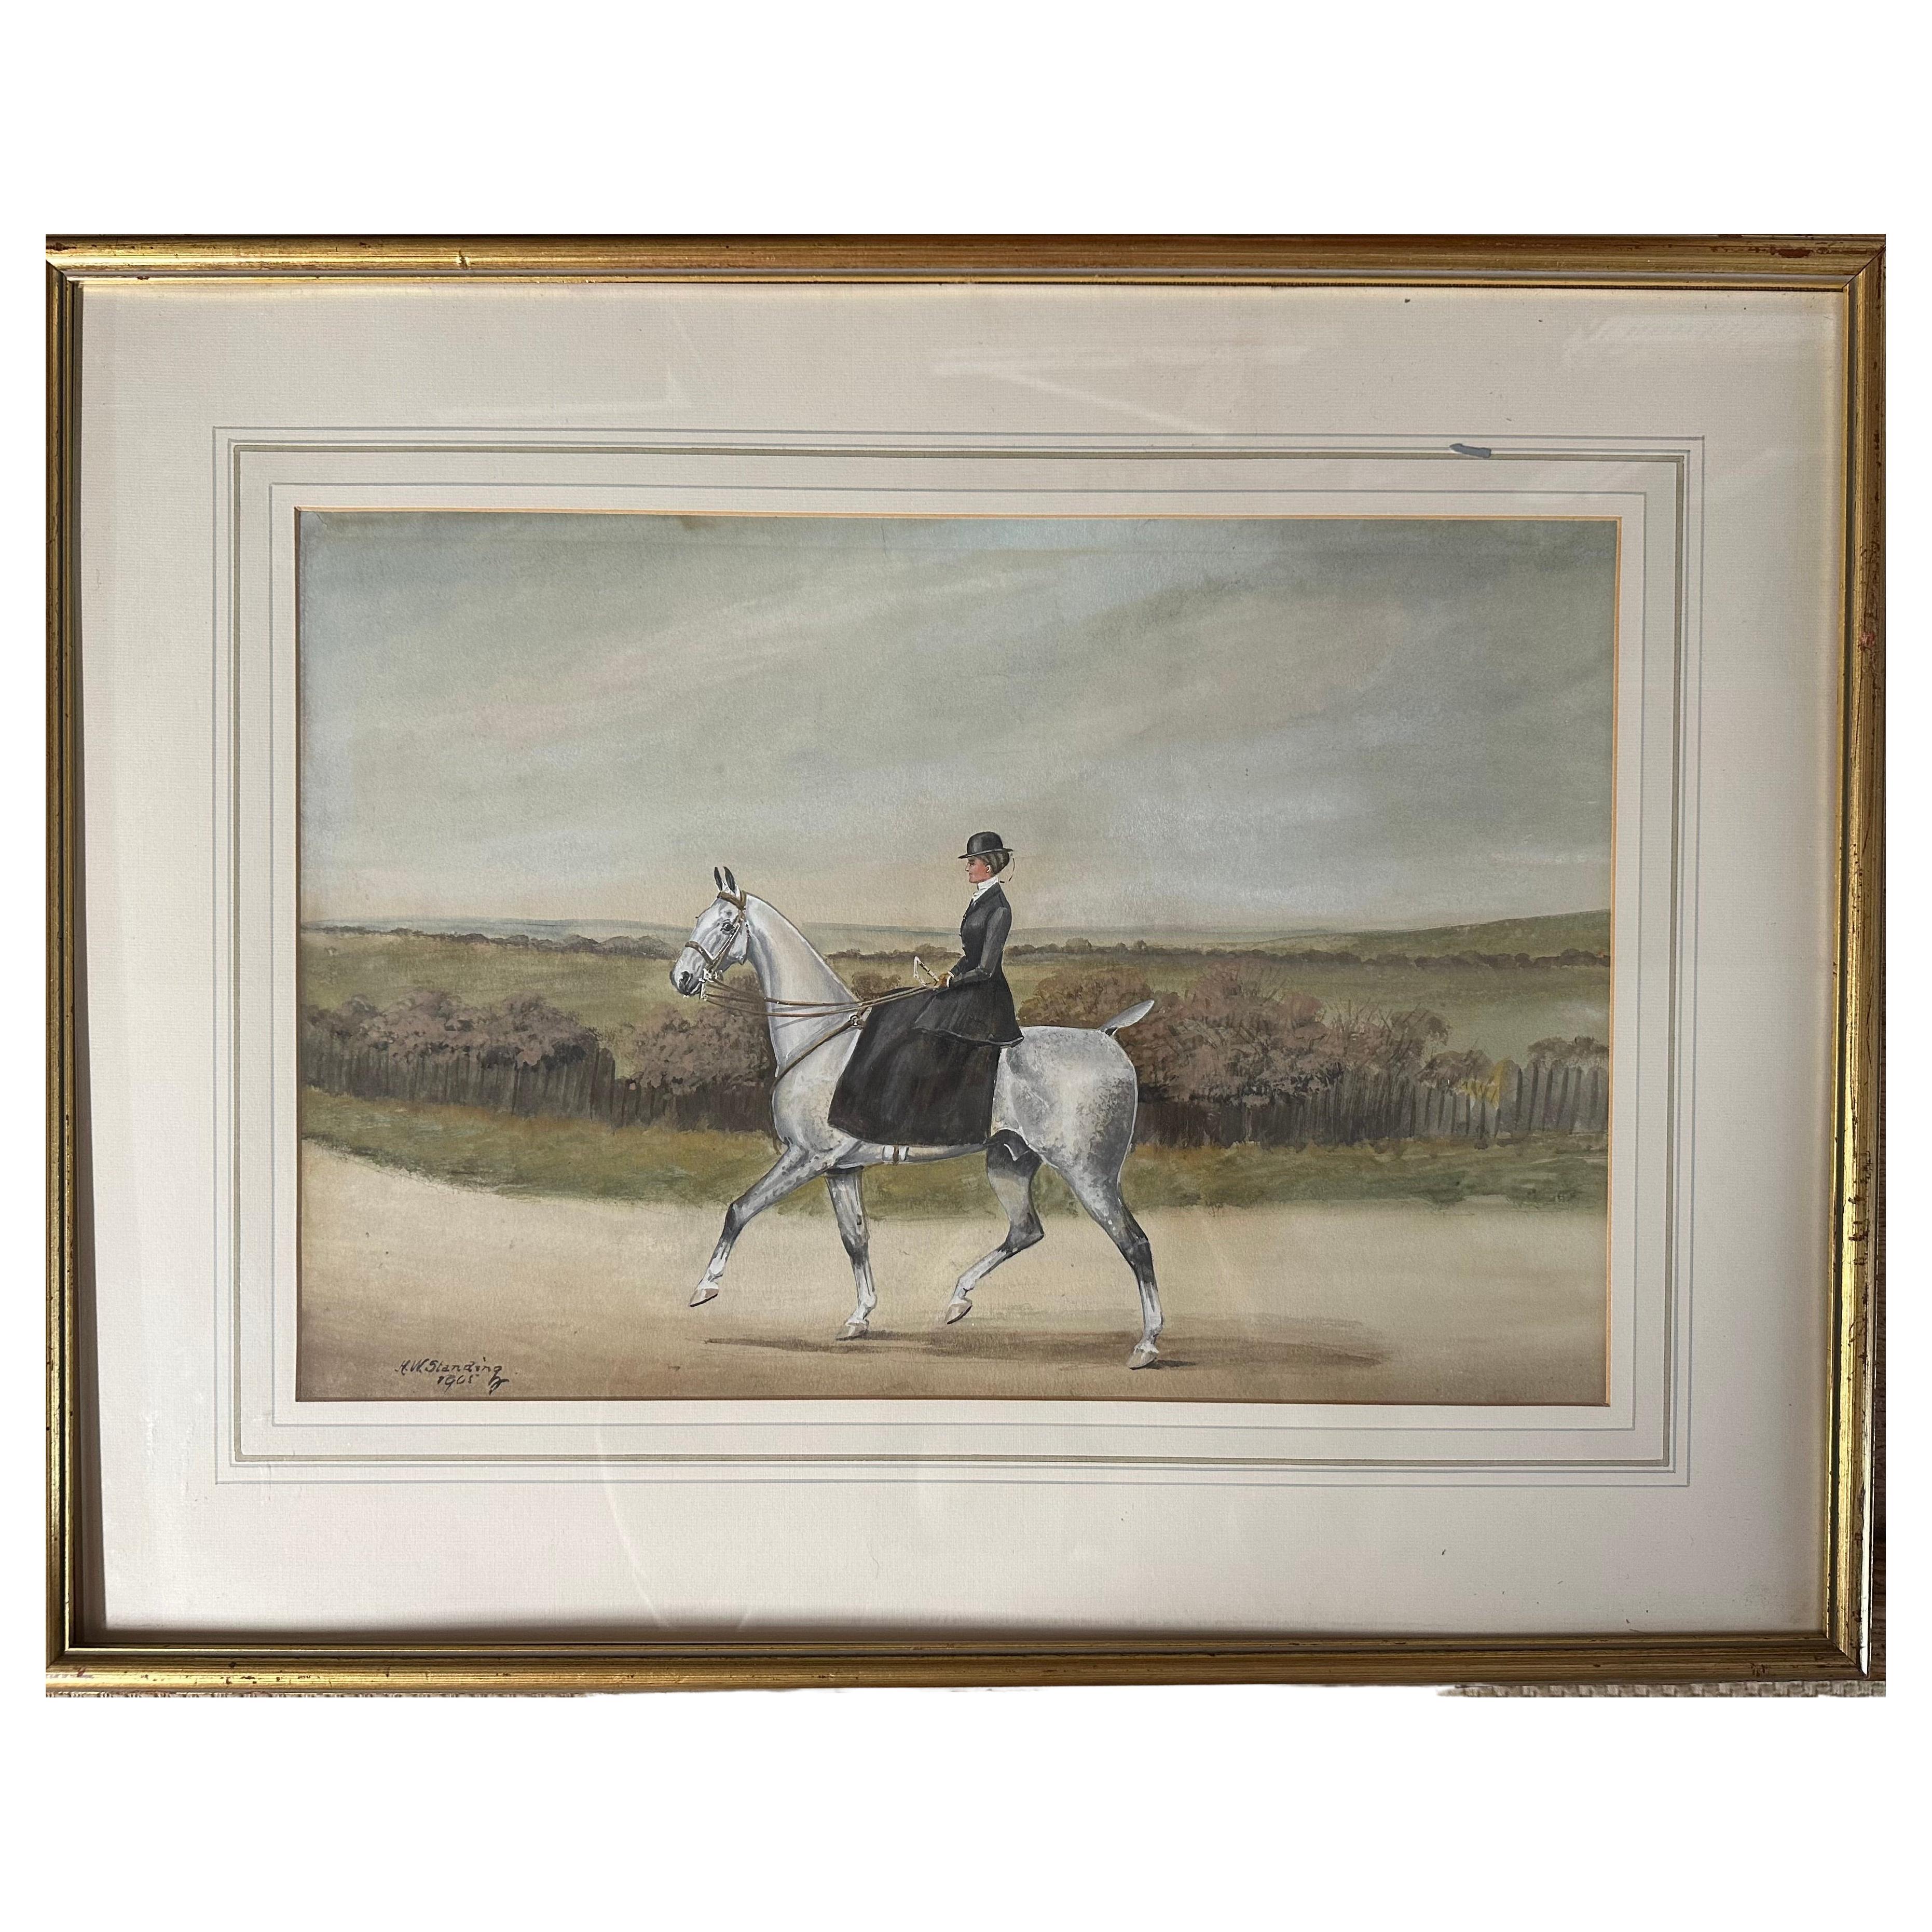 Henry William Standing (British, 1894-1931) Equine Painting